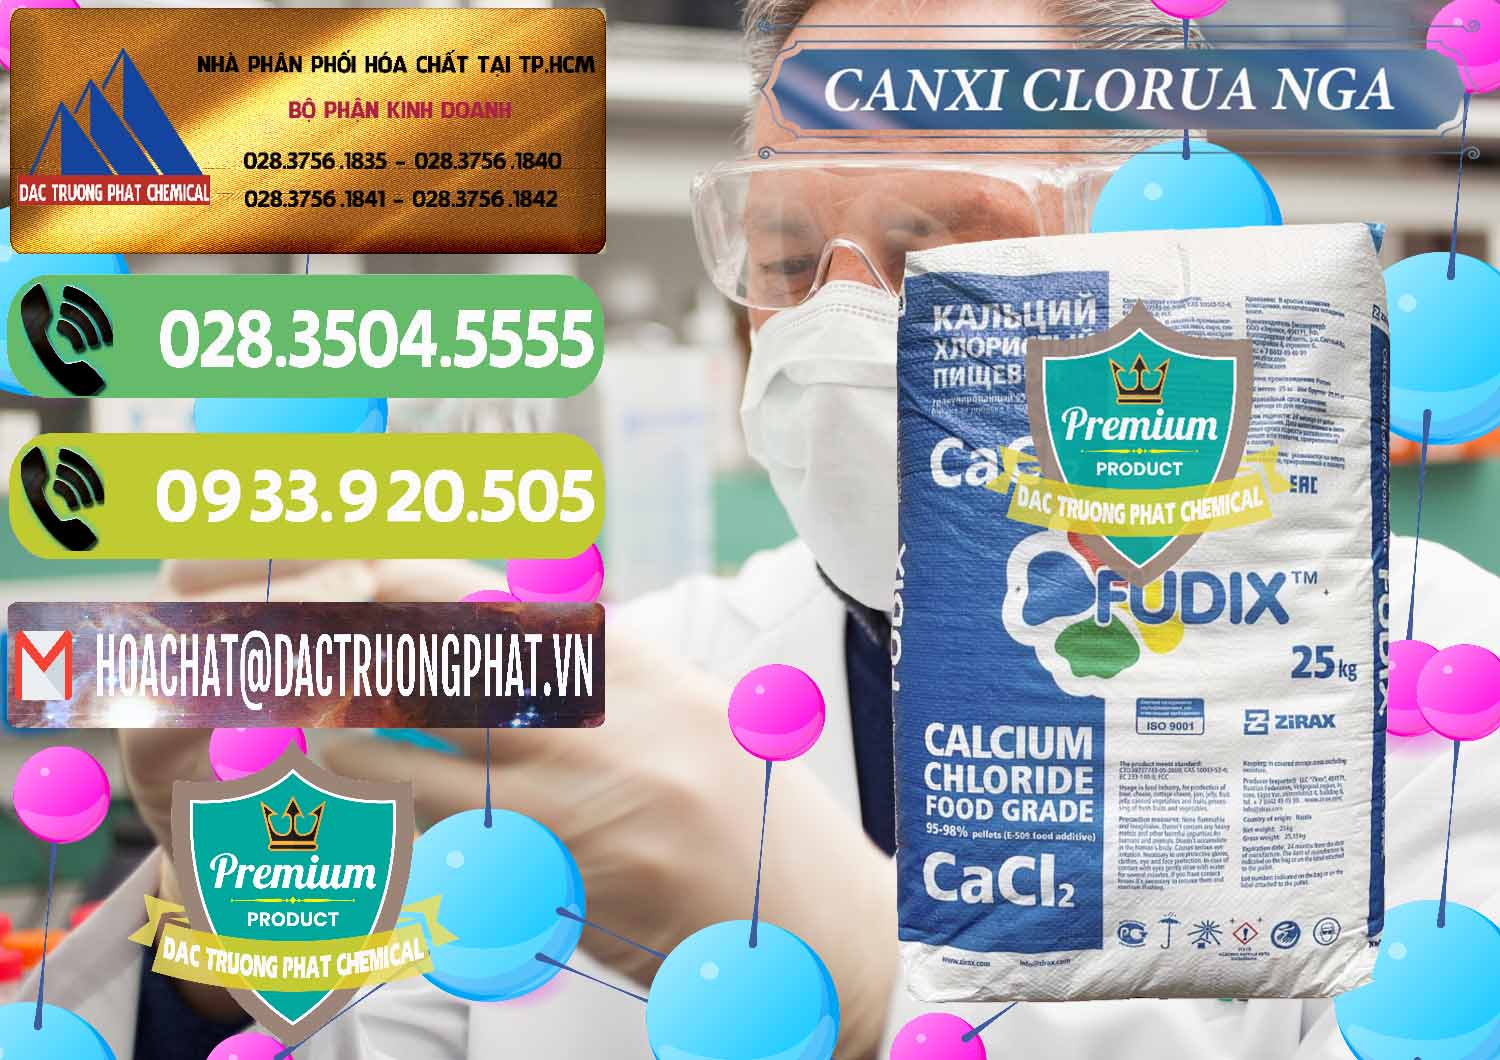 Nơi chuyên nhập khẩu và bán CaCl2 – Canxi Clorua Nga Russia - 0430 - Kinh doanh - phân phối hóa chất tại TP.HCM - hoachatmientay.vn